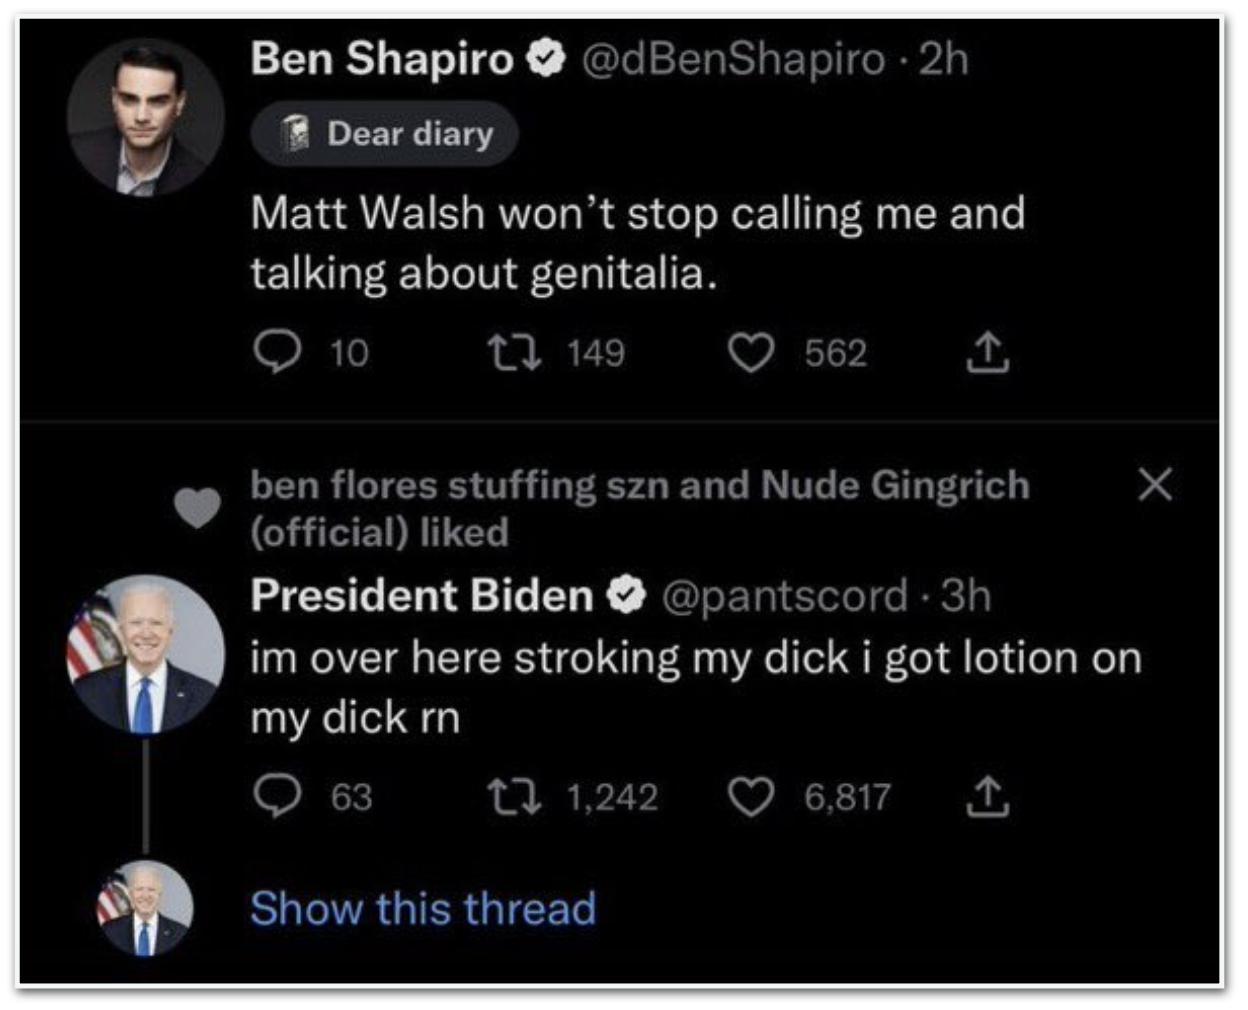 Contas fakes de Joe Biden e Ben Shapiro publicaram conteúdos adultos durante a semana Reprodução/Twitter